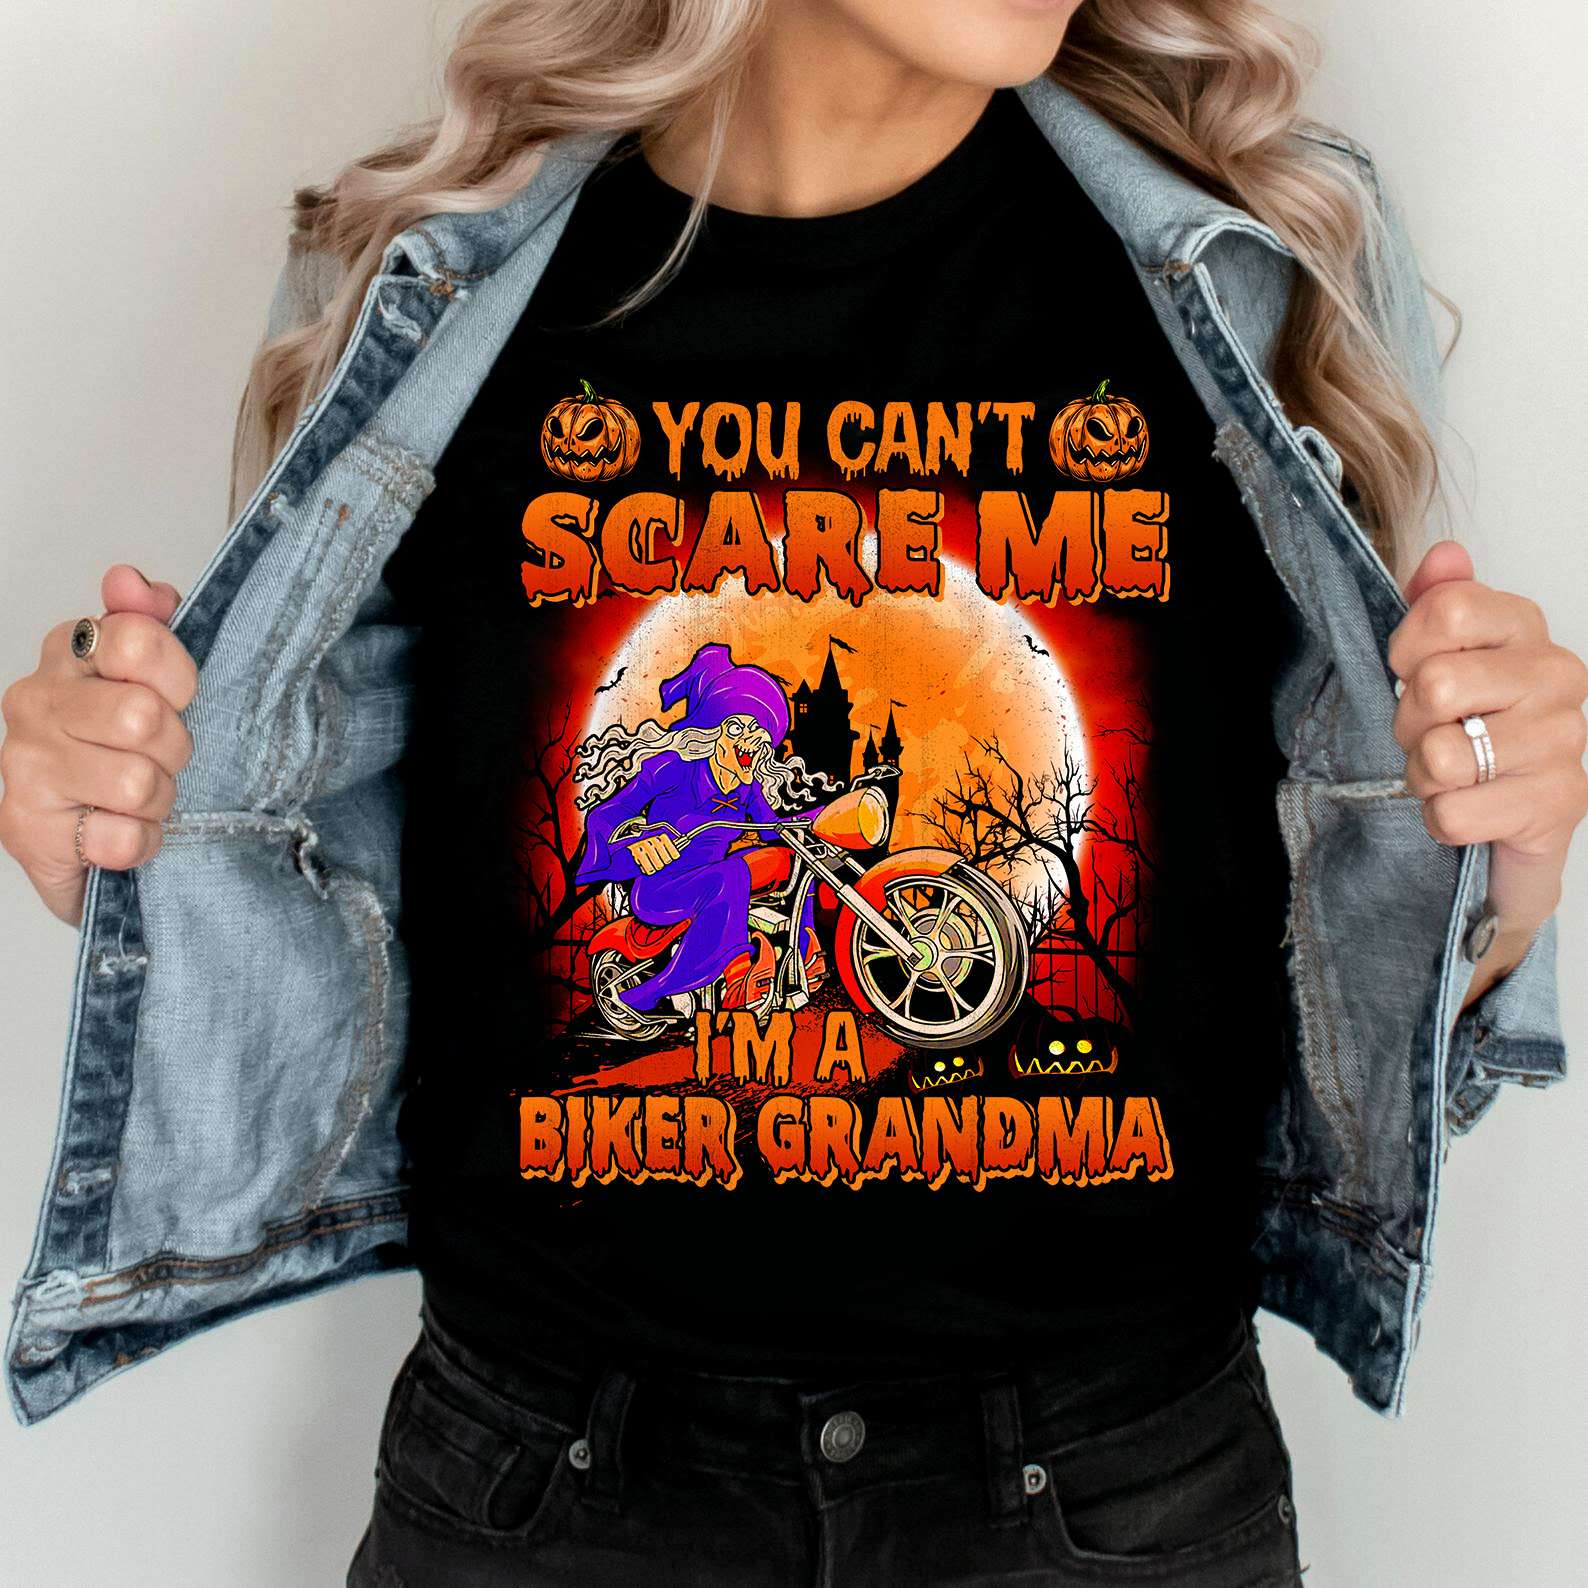 You can't scare me I'm a biker grandma - Grandma witch biker, Halloween gift for biker